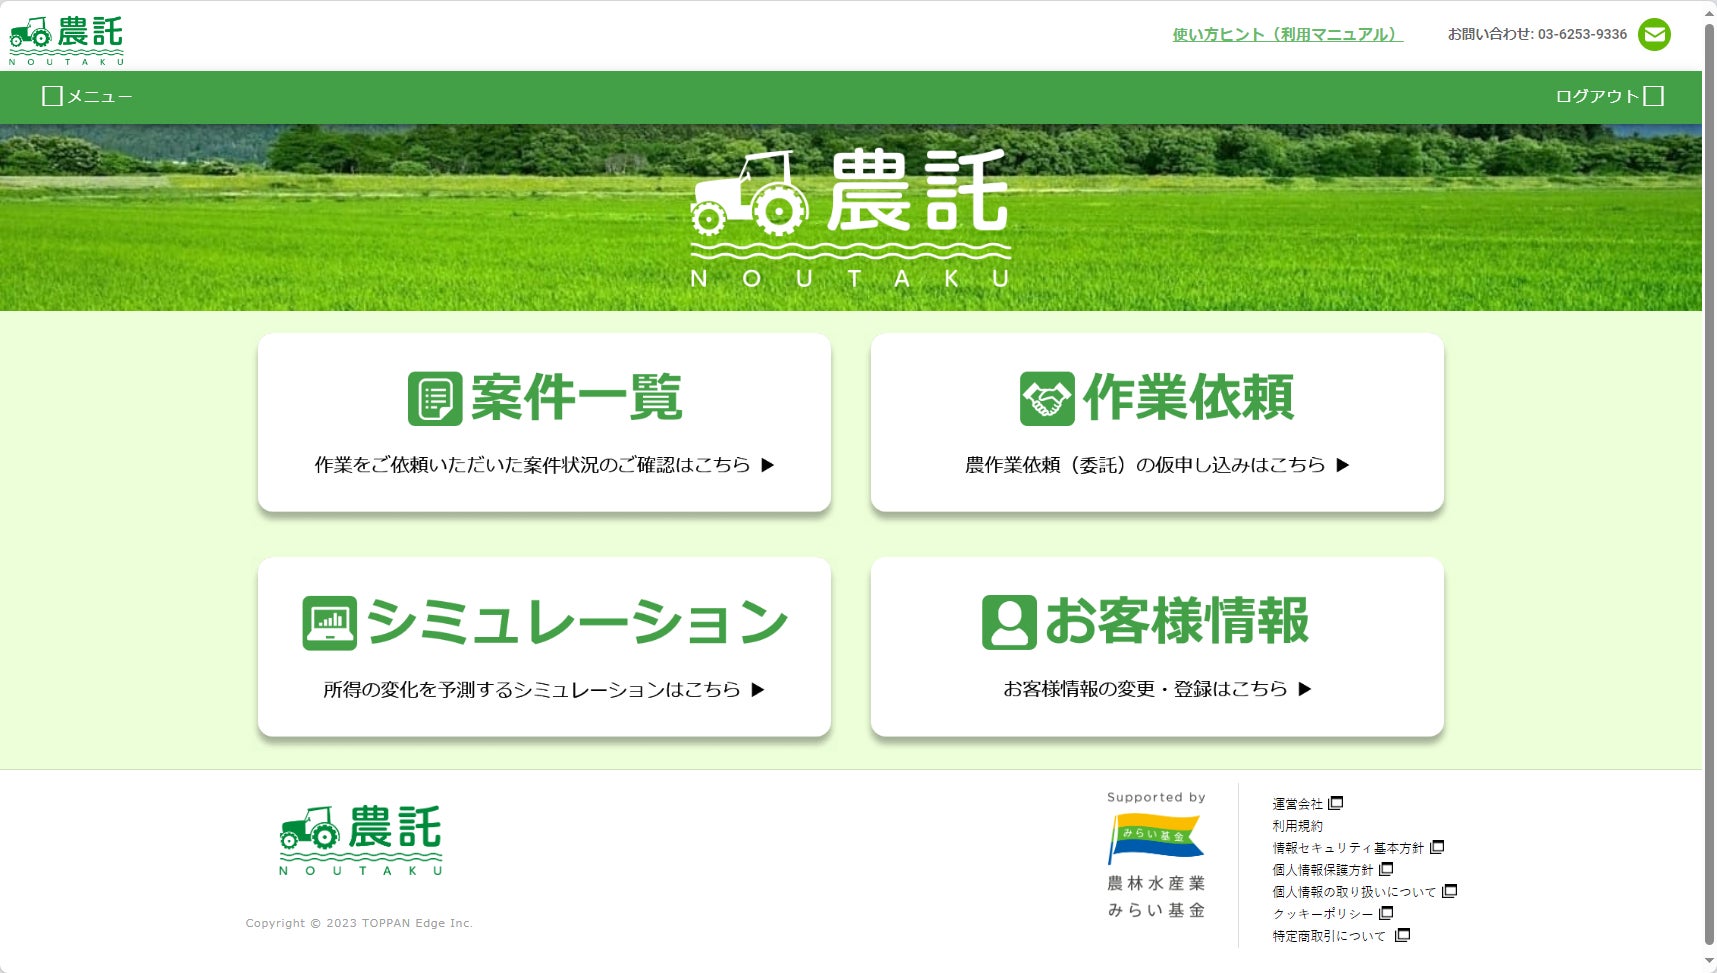 TOPPANエッジ、農業マッチングサービス「農託」を提供開始のサブ画像1_「農託」スタート画面のイメージ